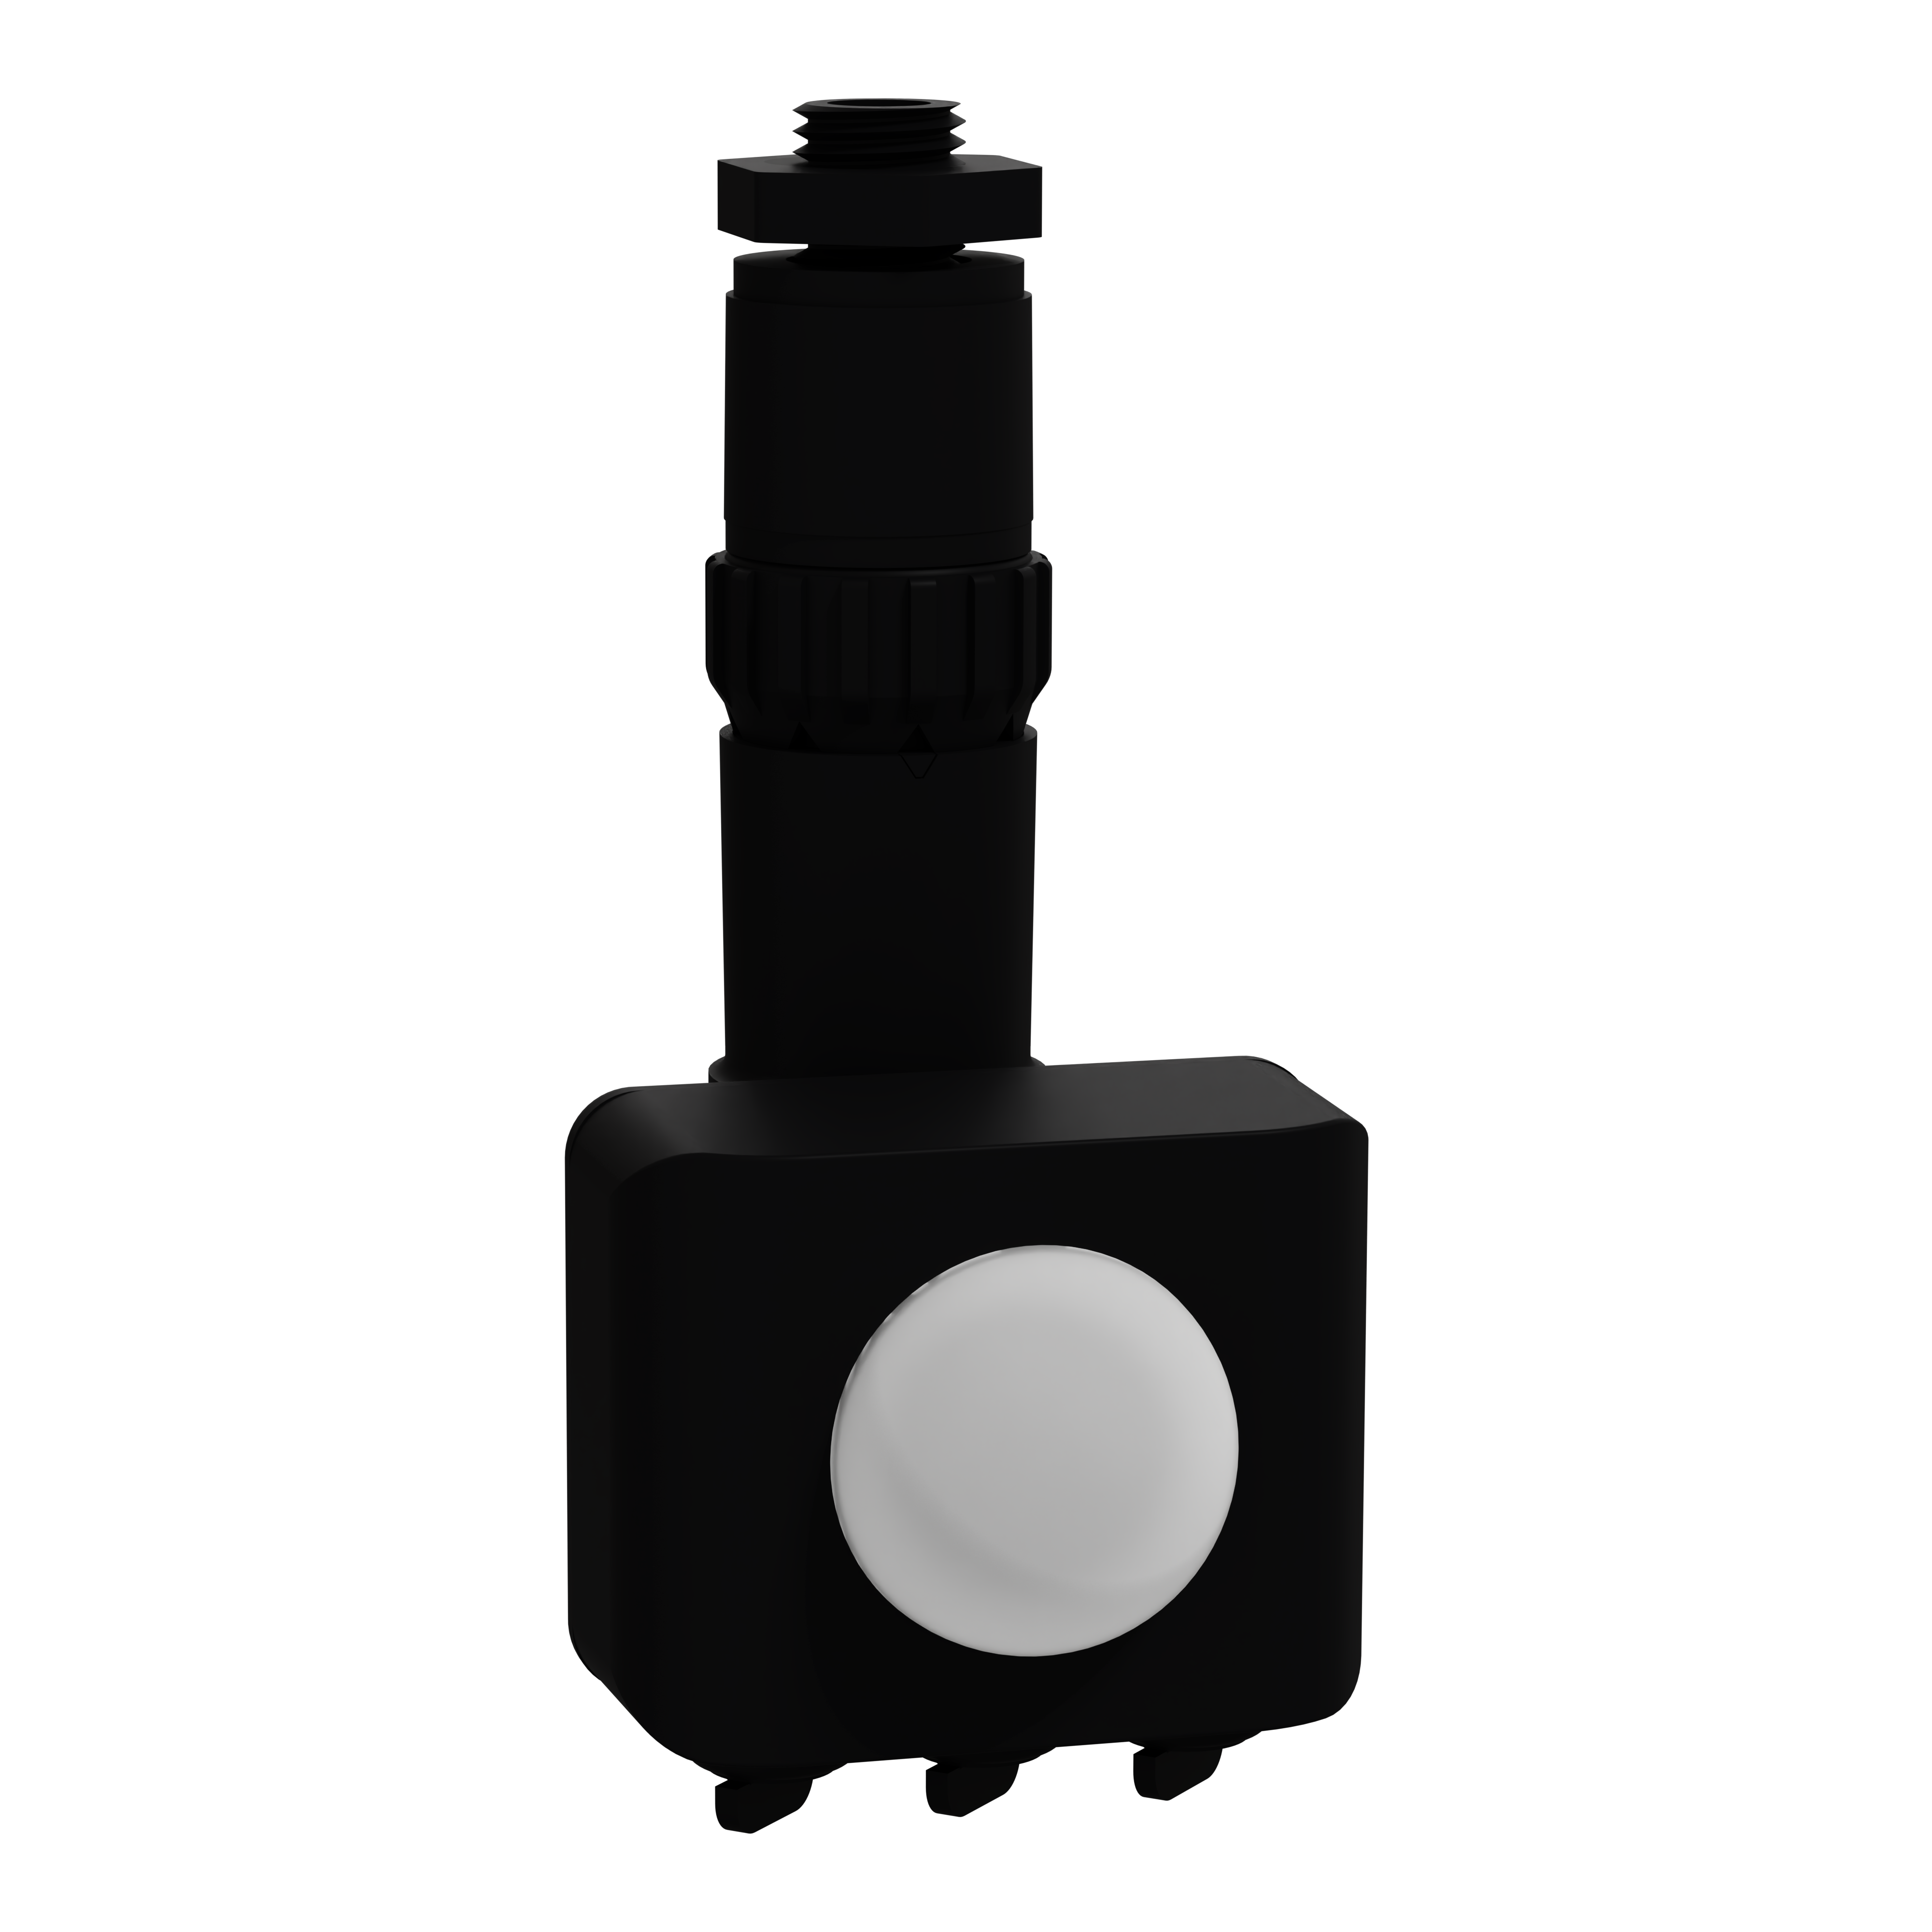 CLITPFLTSENMOD - Sensor, Clipsal - Lighting, PIR, for floodlight, IP65, black